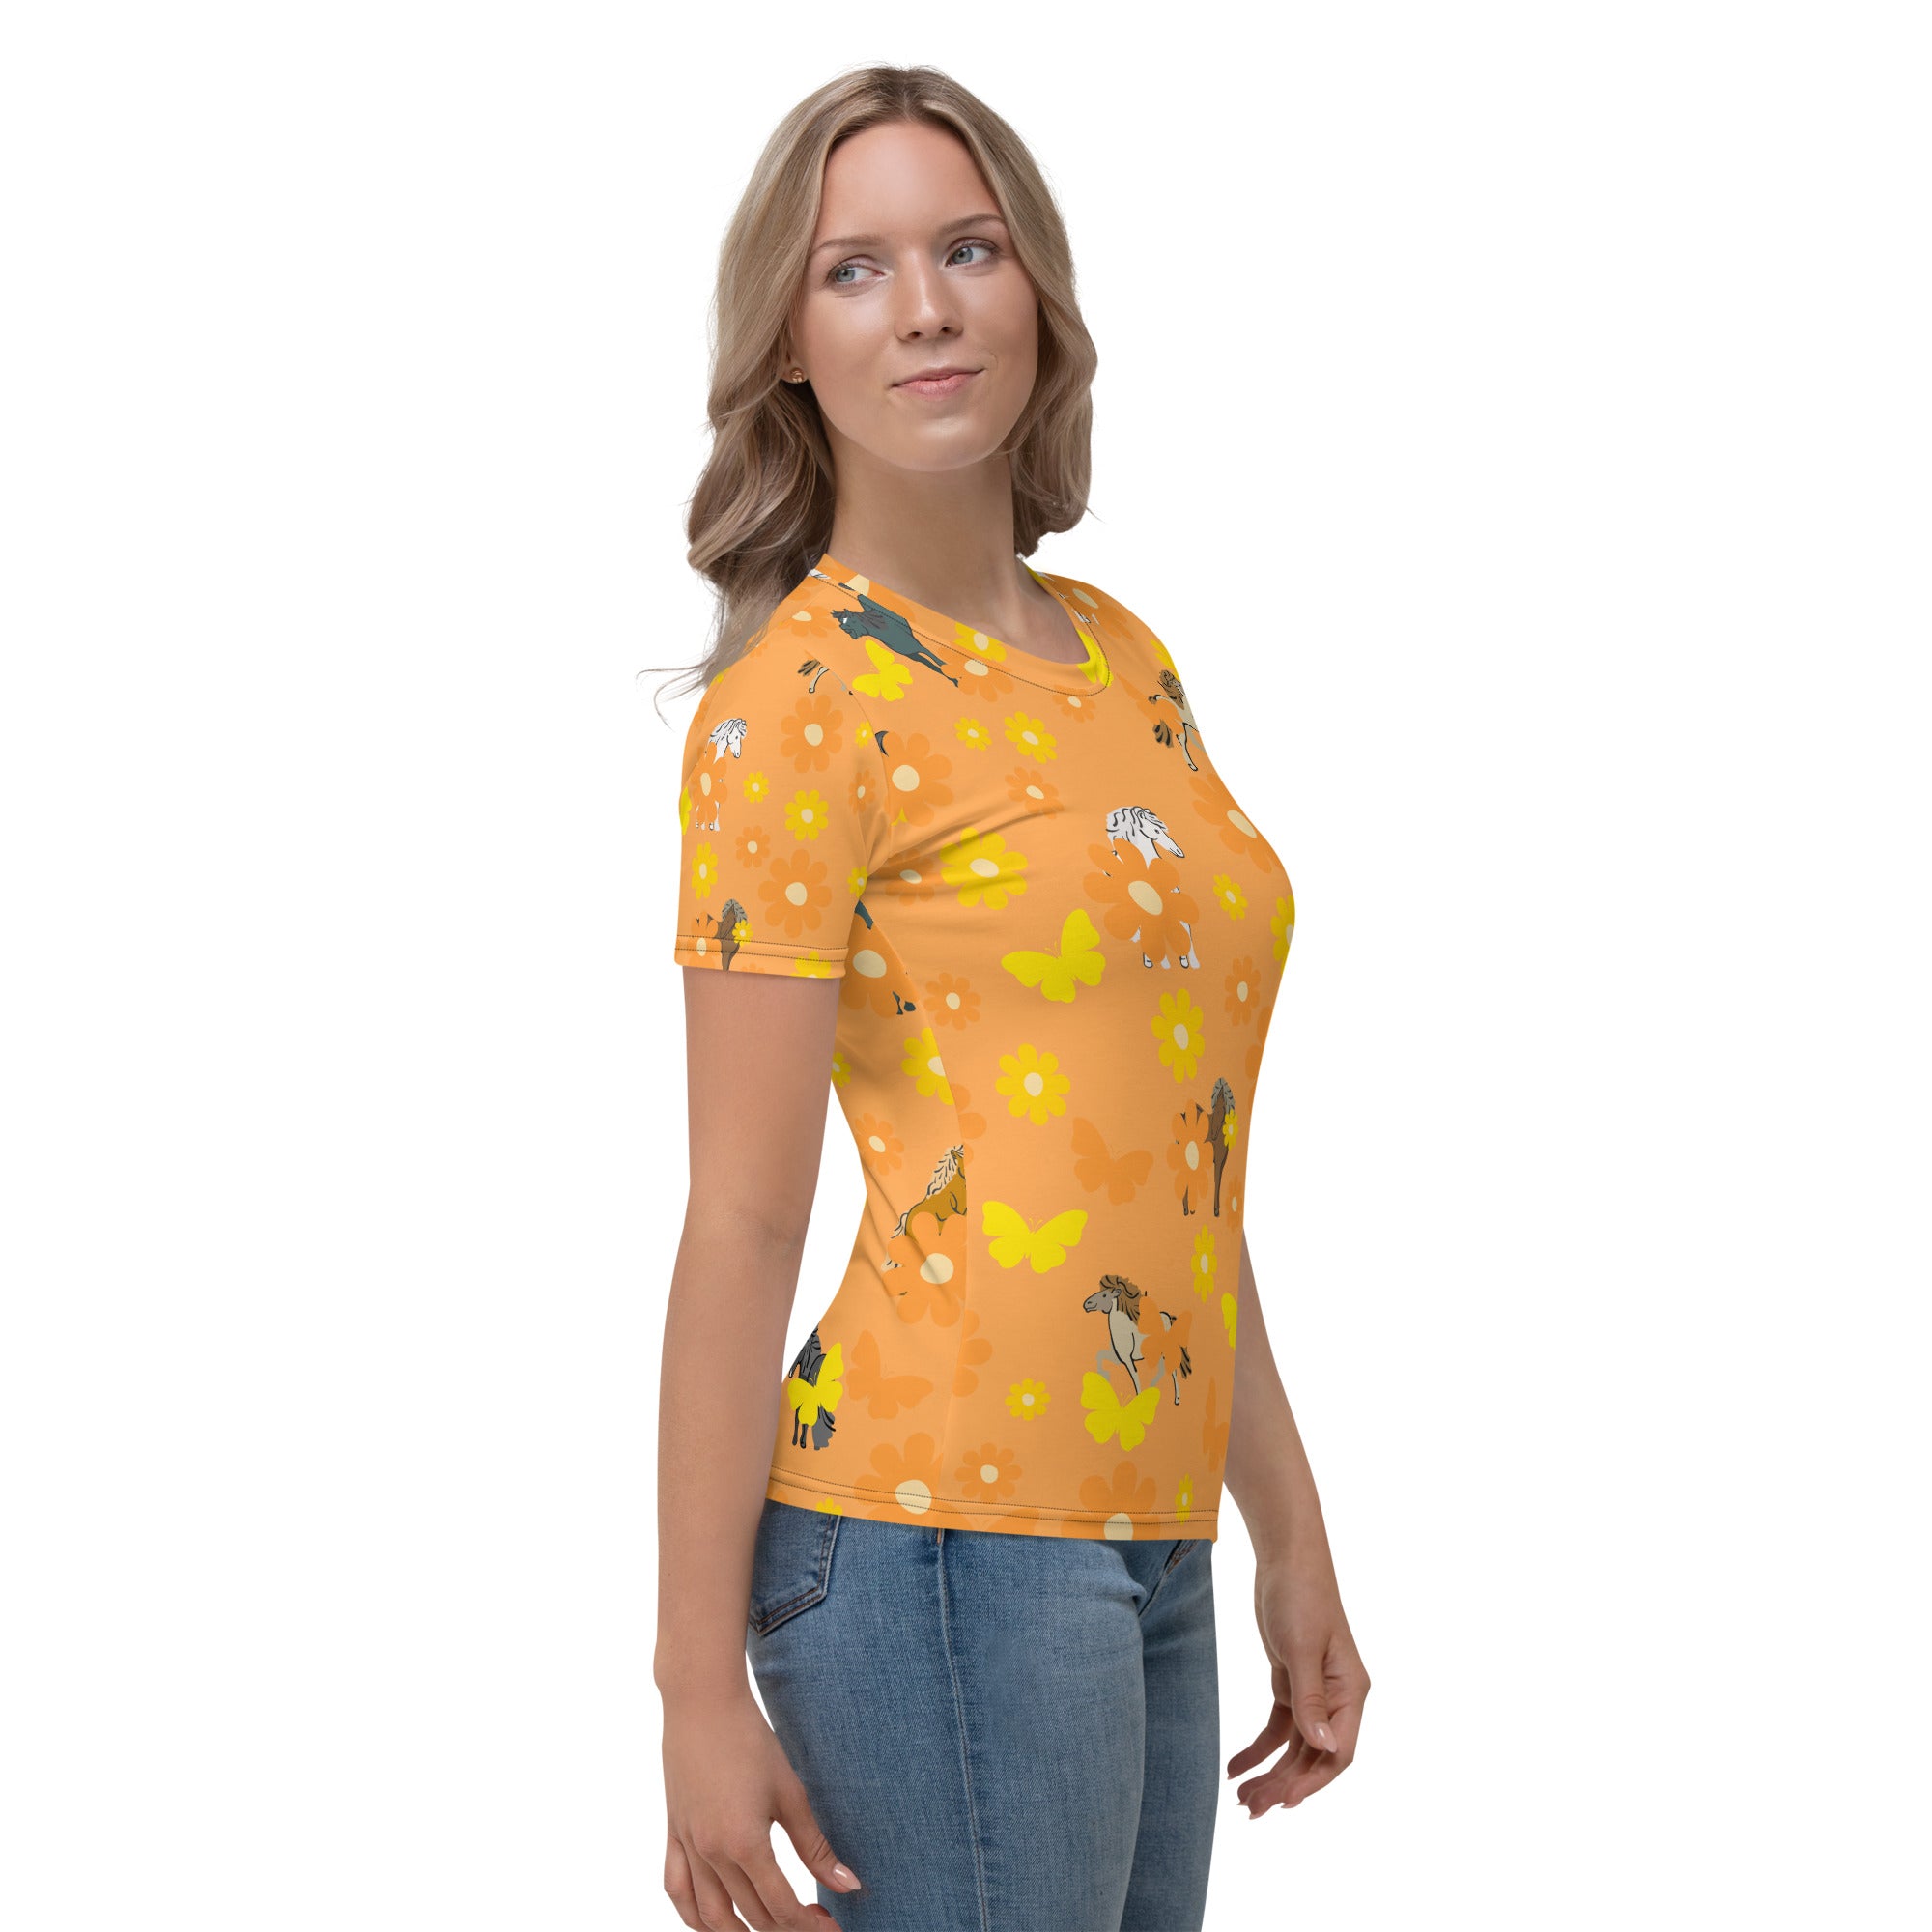 Field of orange daisies Women's T-shirt